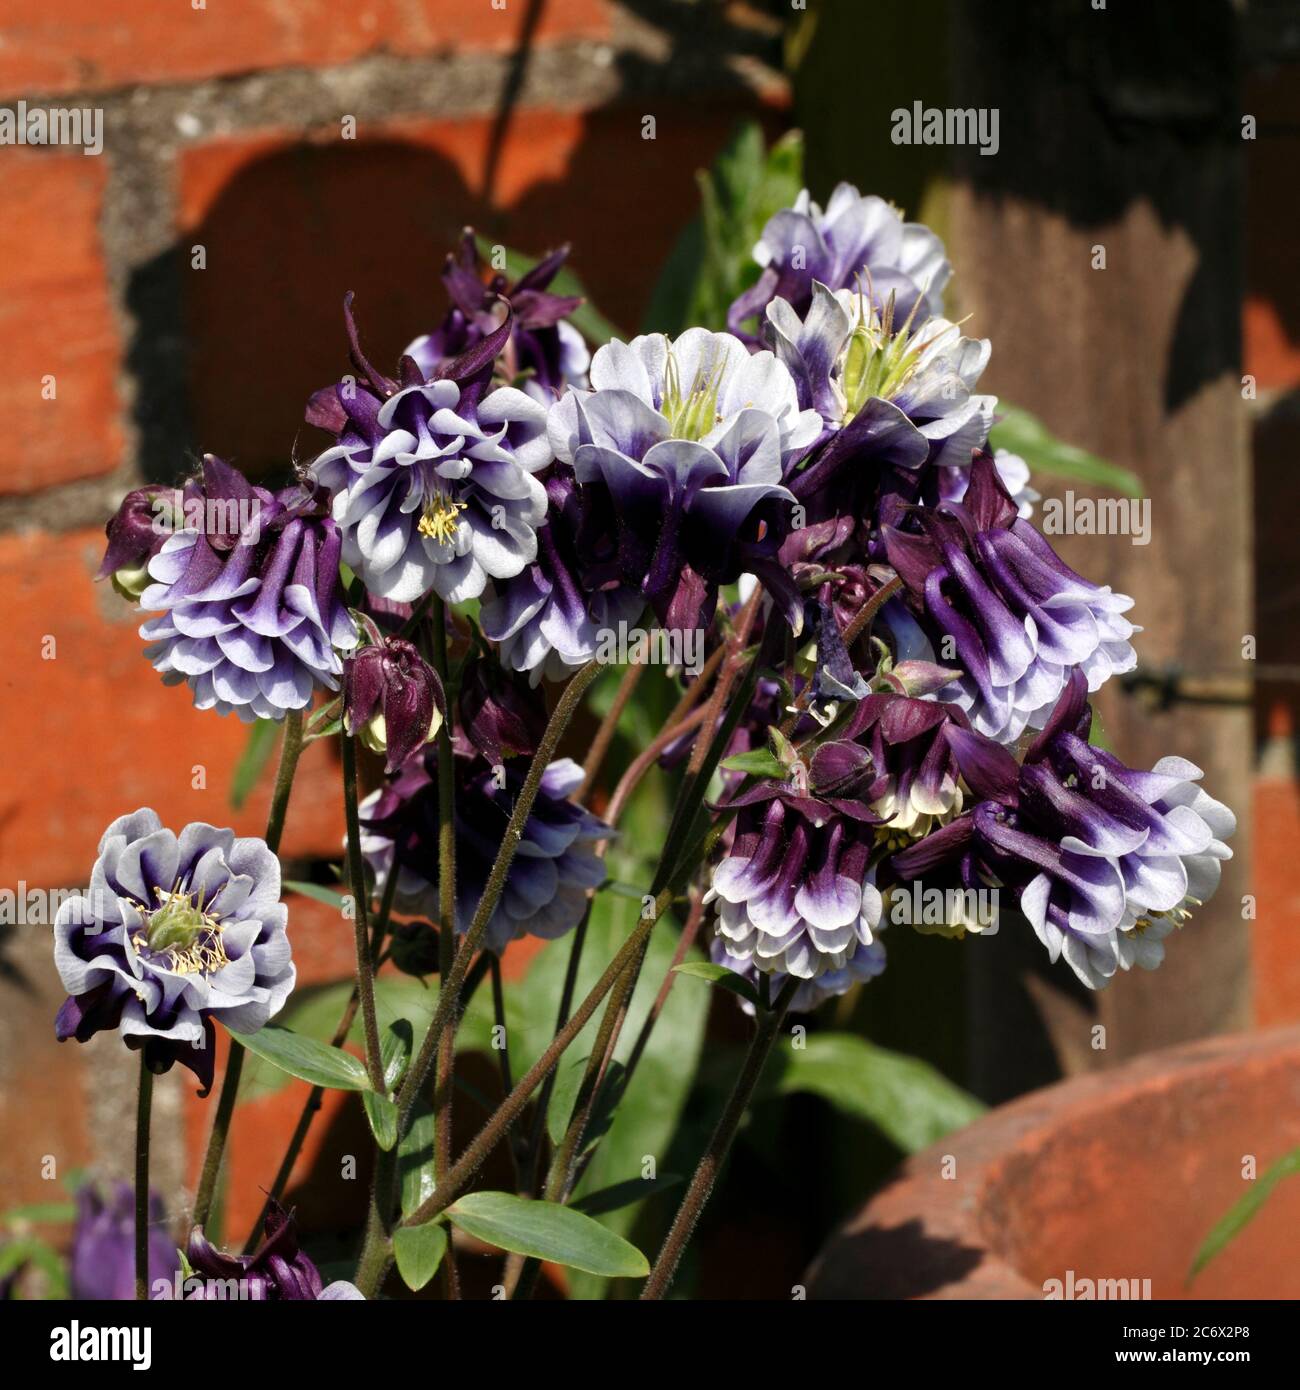 Aquilegia  variety. Purple and white double flowered common columbine, Aquilegia vulgaris Stock Photo